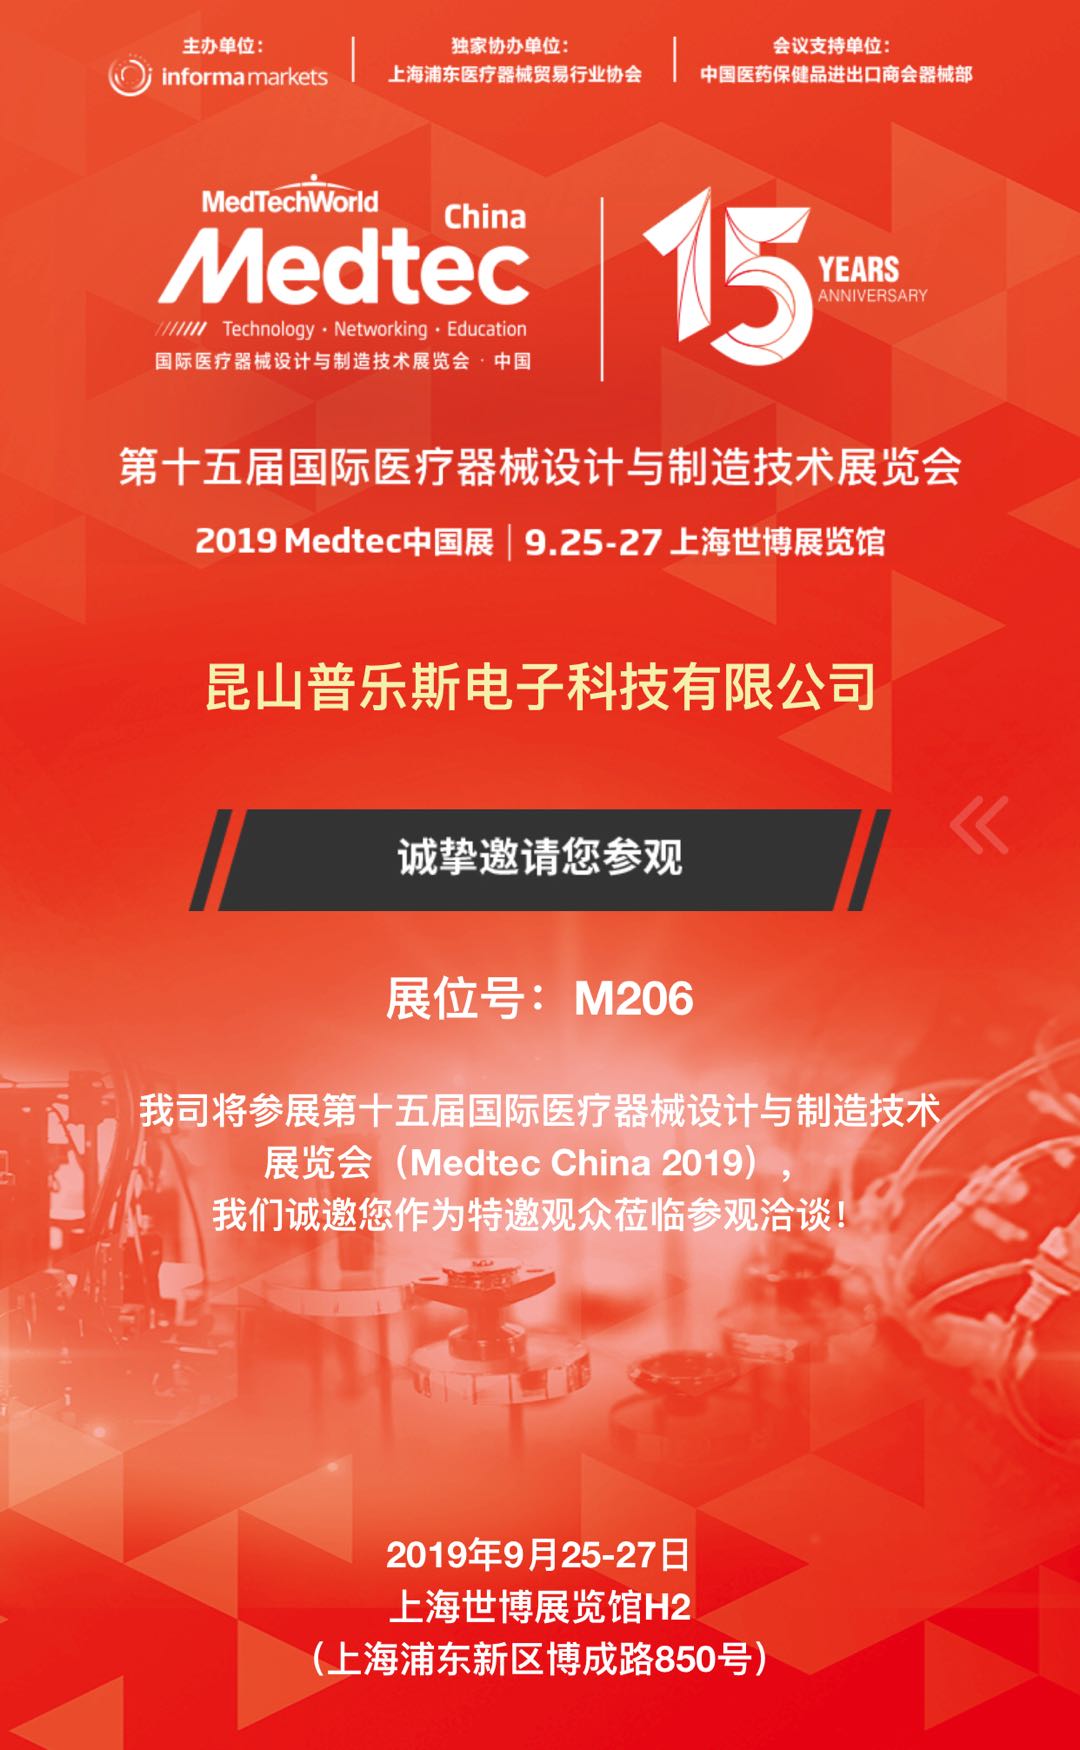 2019上海Medtec中国展布展正在进行中-普乐斯等离子清洗机